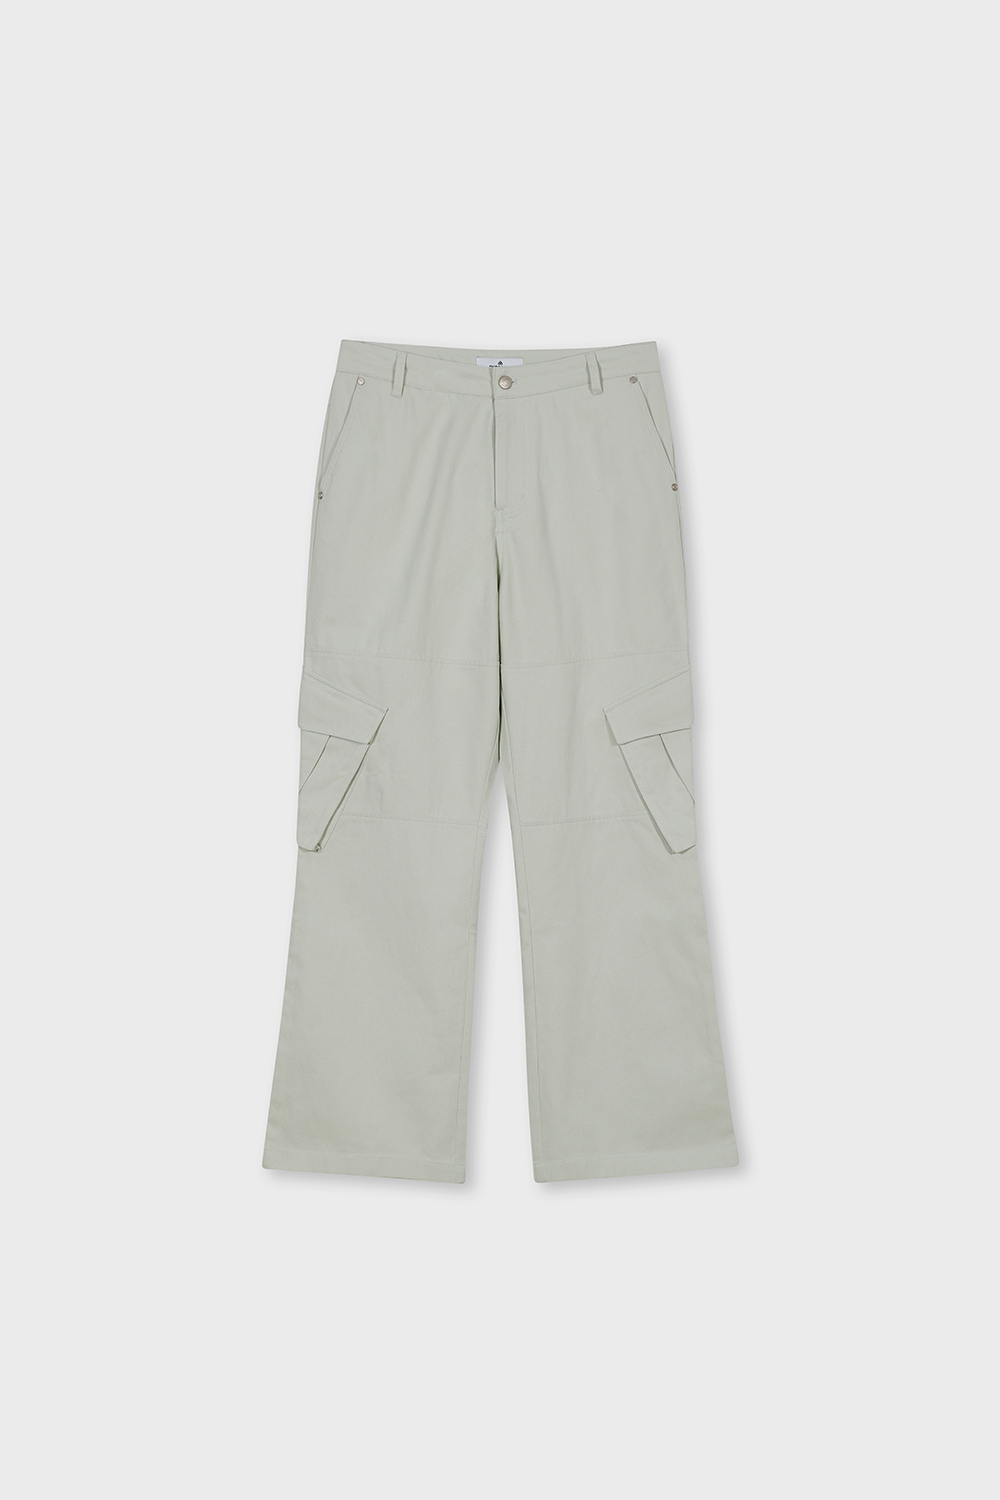 VELO Line Cargo Pants (Grey)